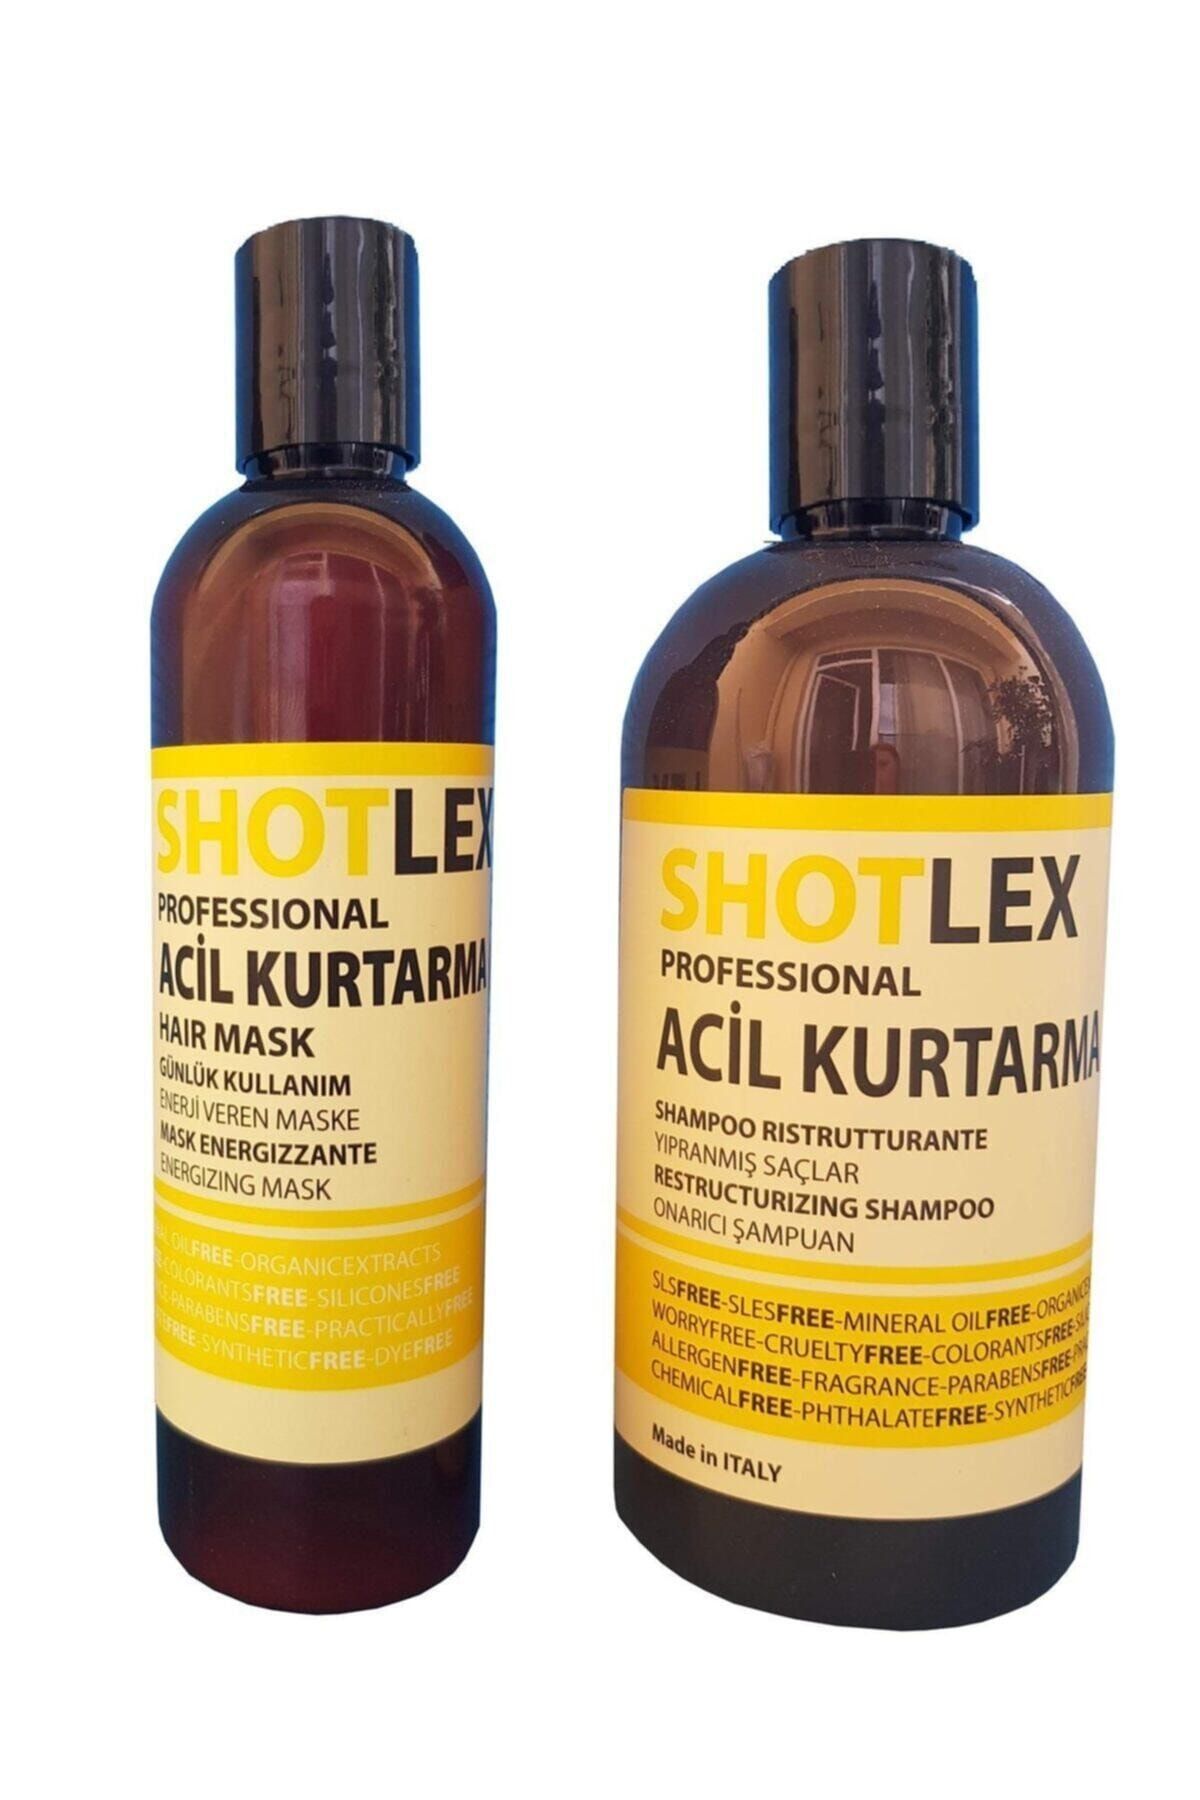 shotlex Professional Acil Kurtarma Şampuan 525ml + Acil Kurtarma Maske 275ml